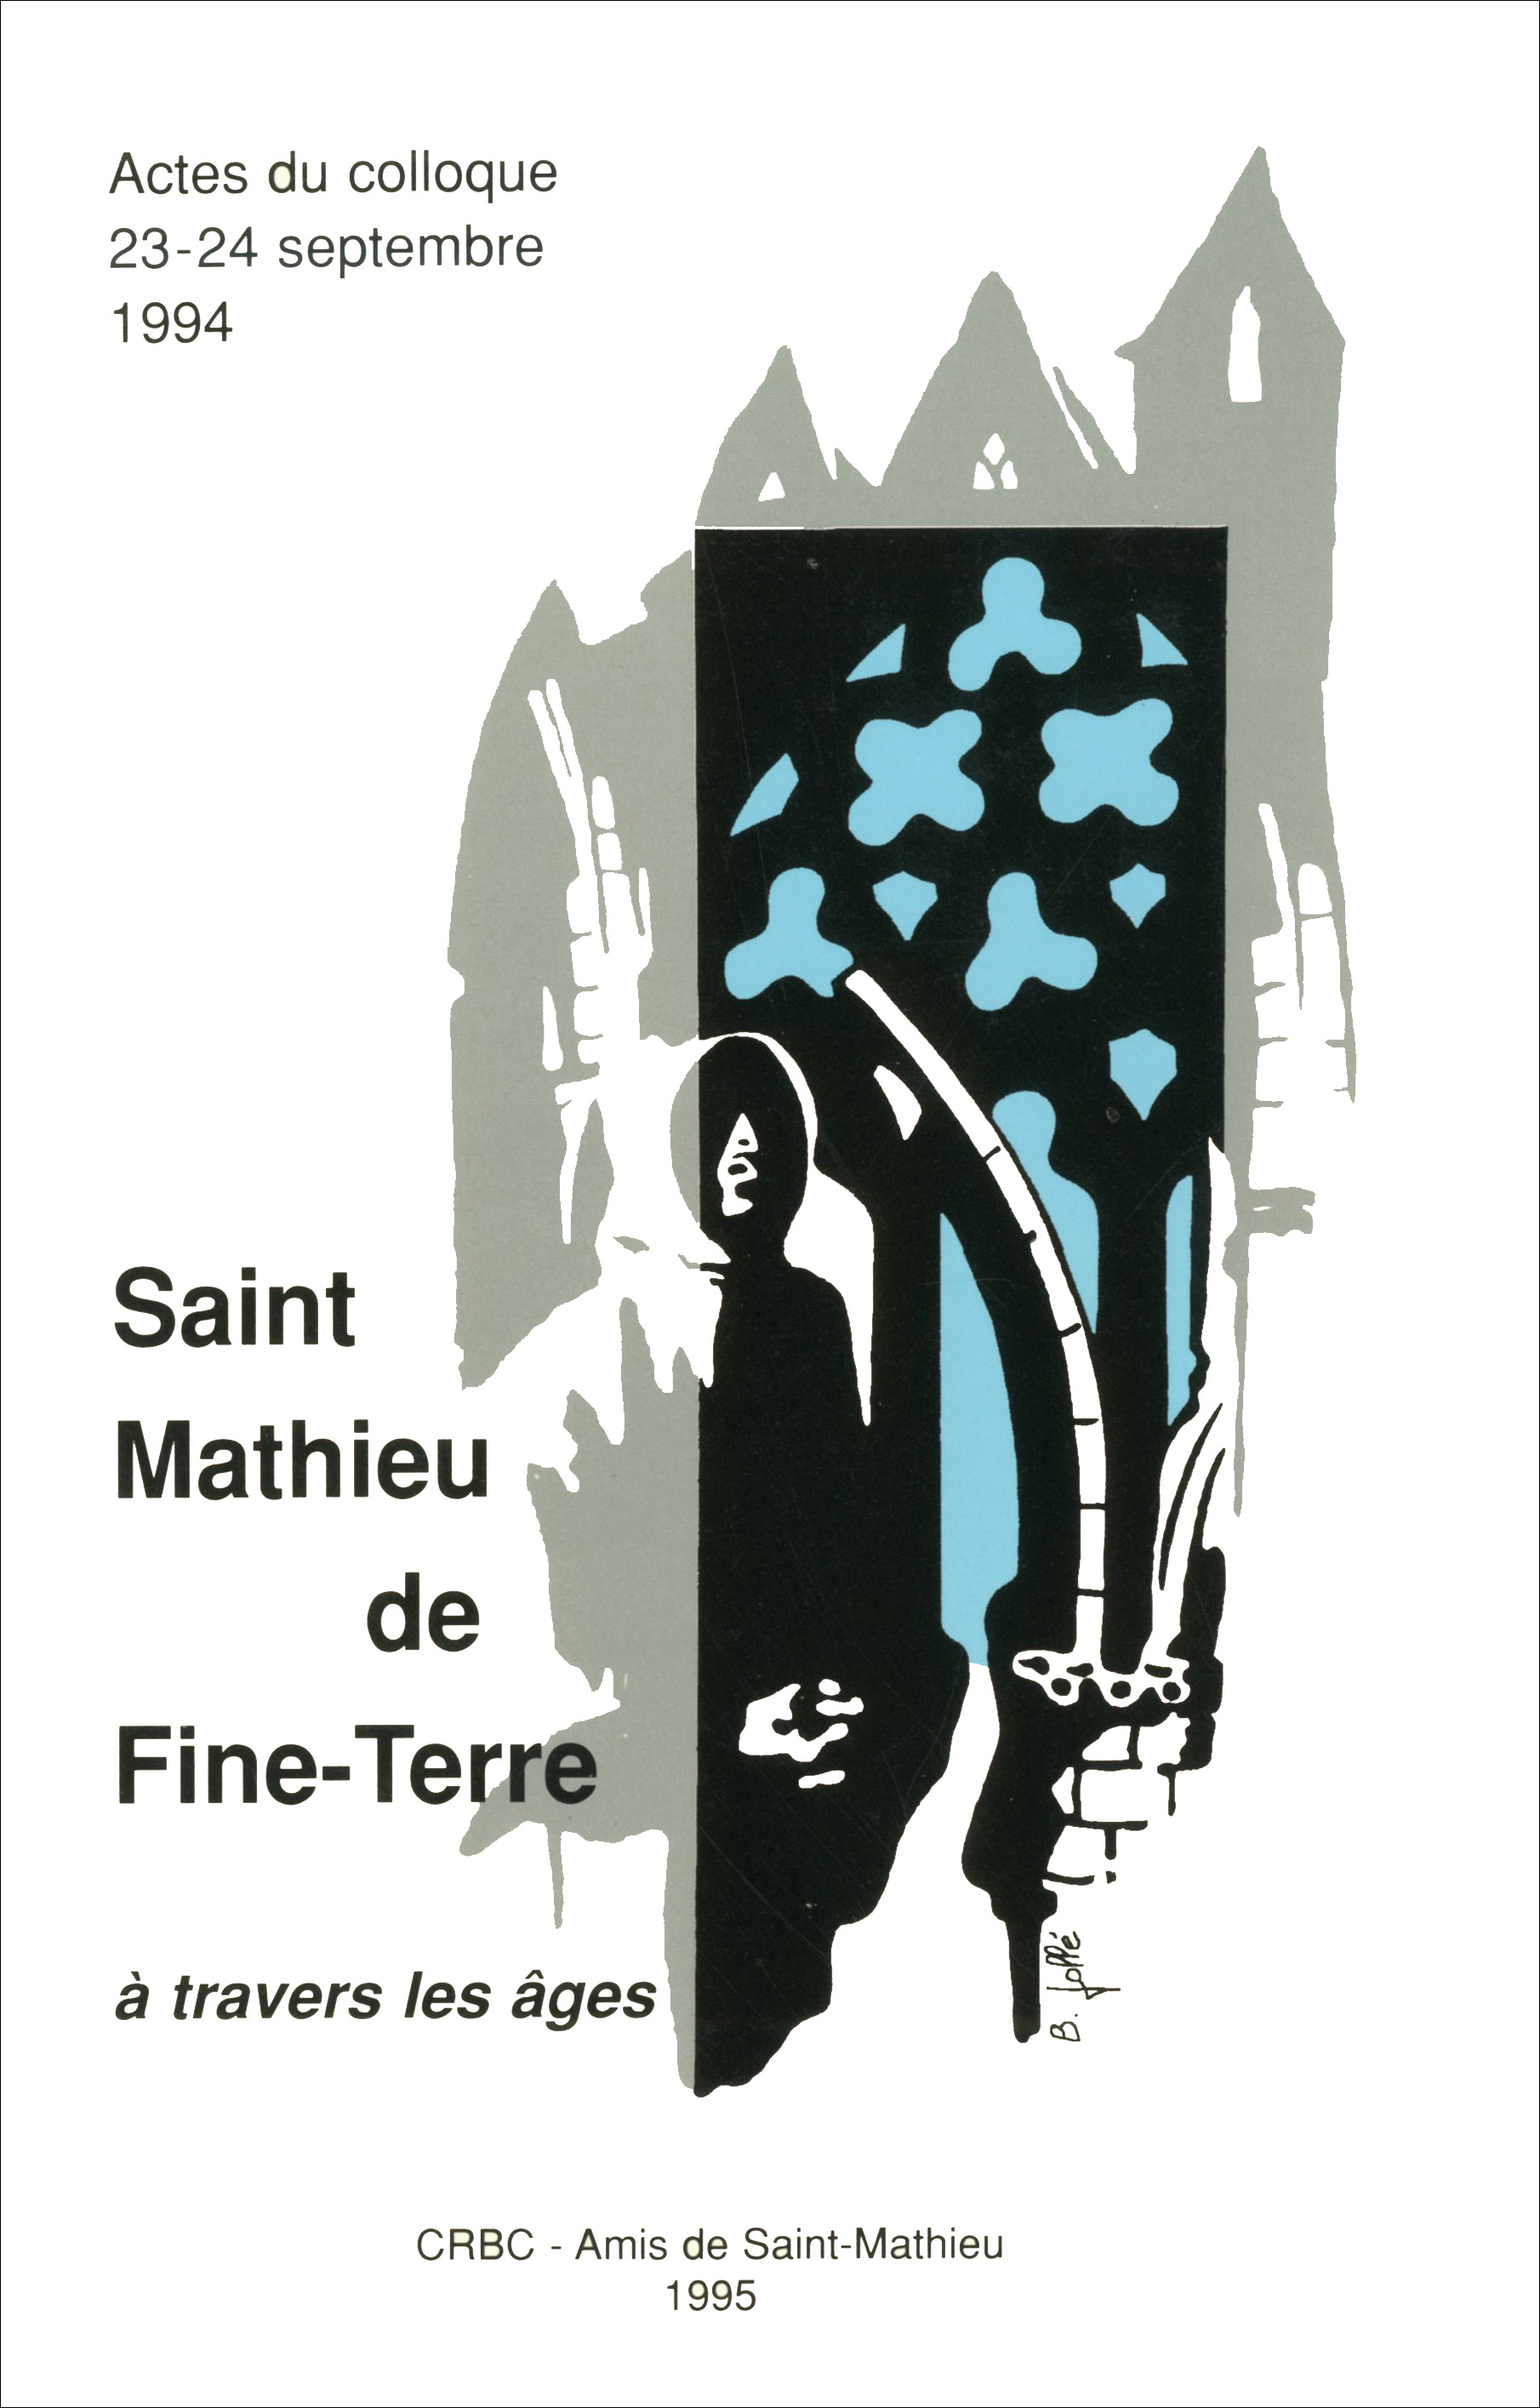 Saint-Mathieu de Fine-Terre